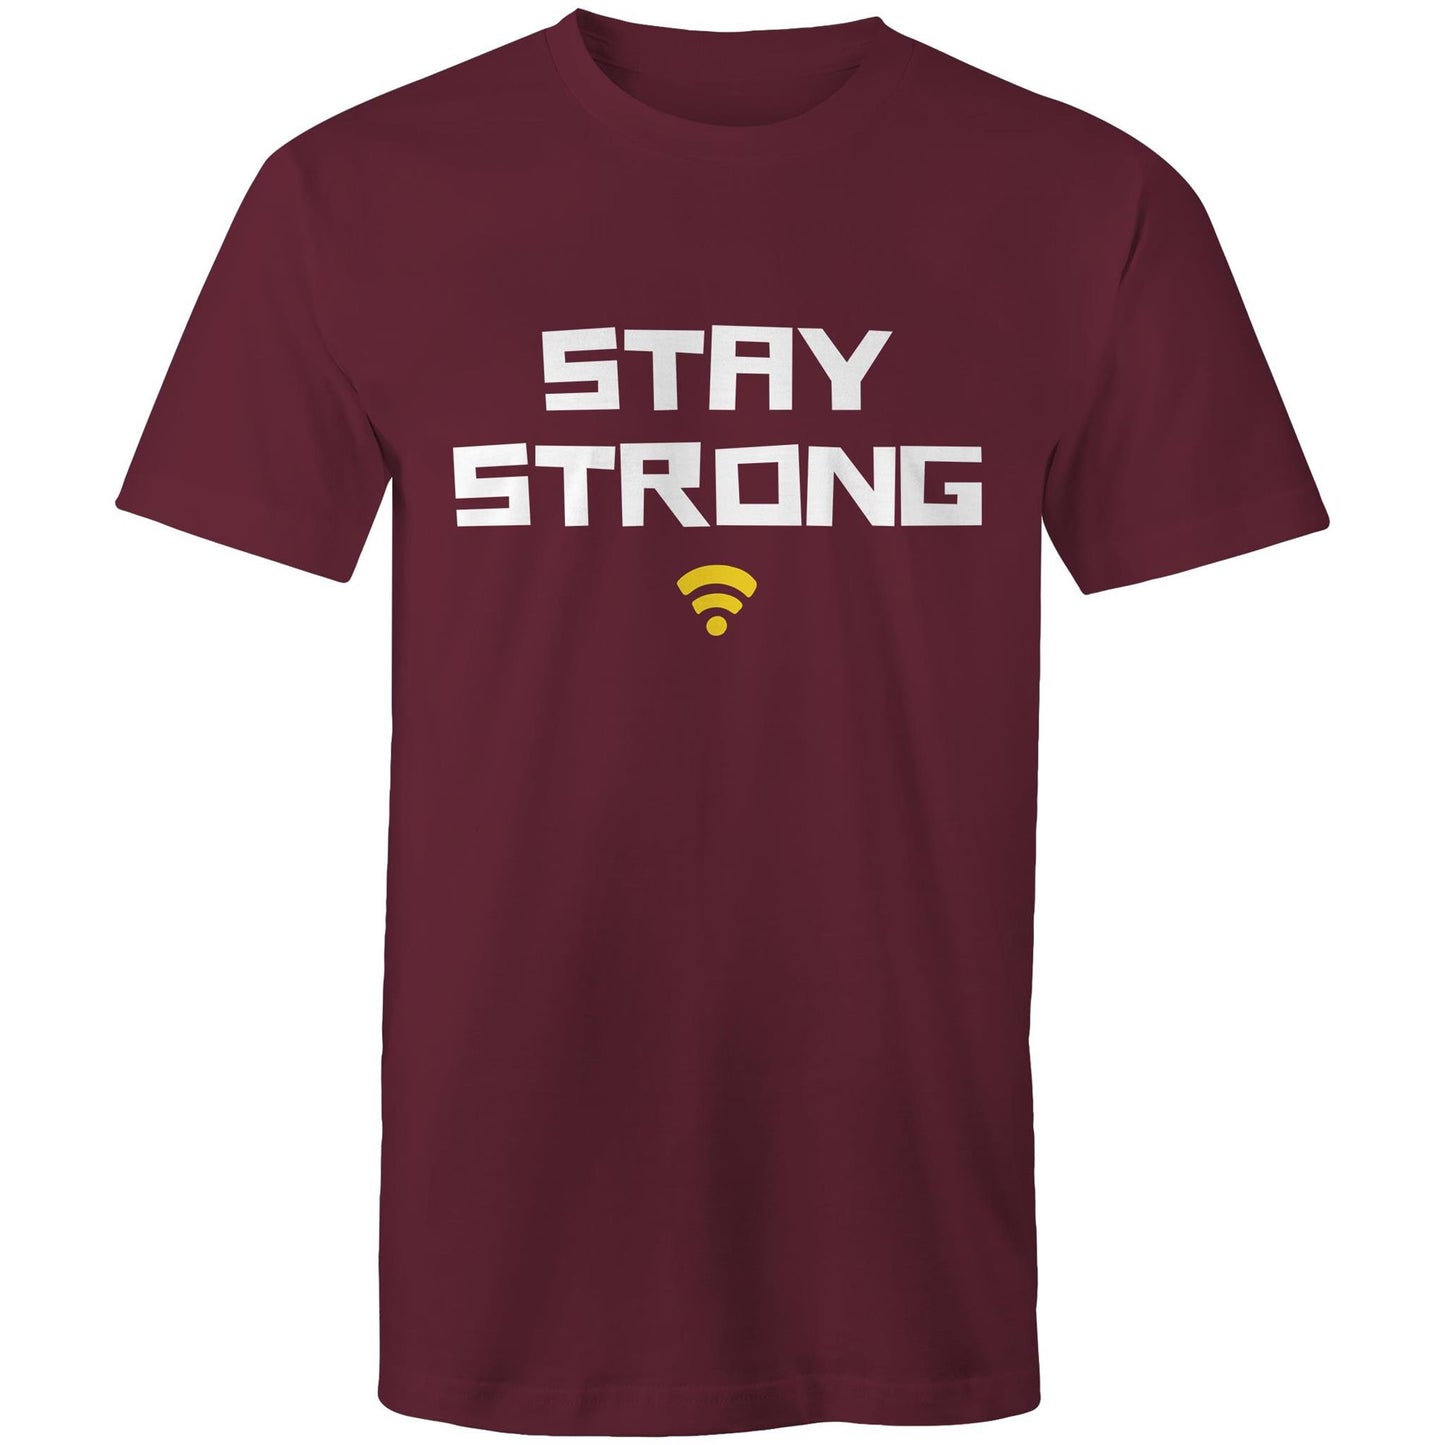 Stay Strong - Mens T-Shirt Burgundy Mens T-shirt Motivation Tech